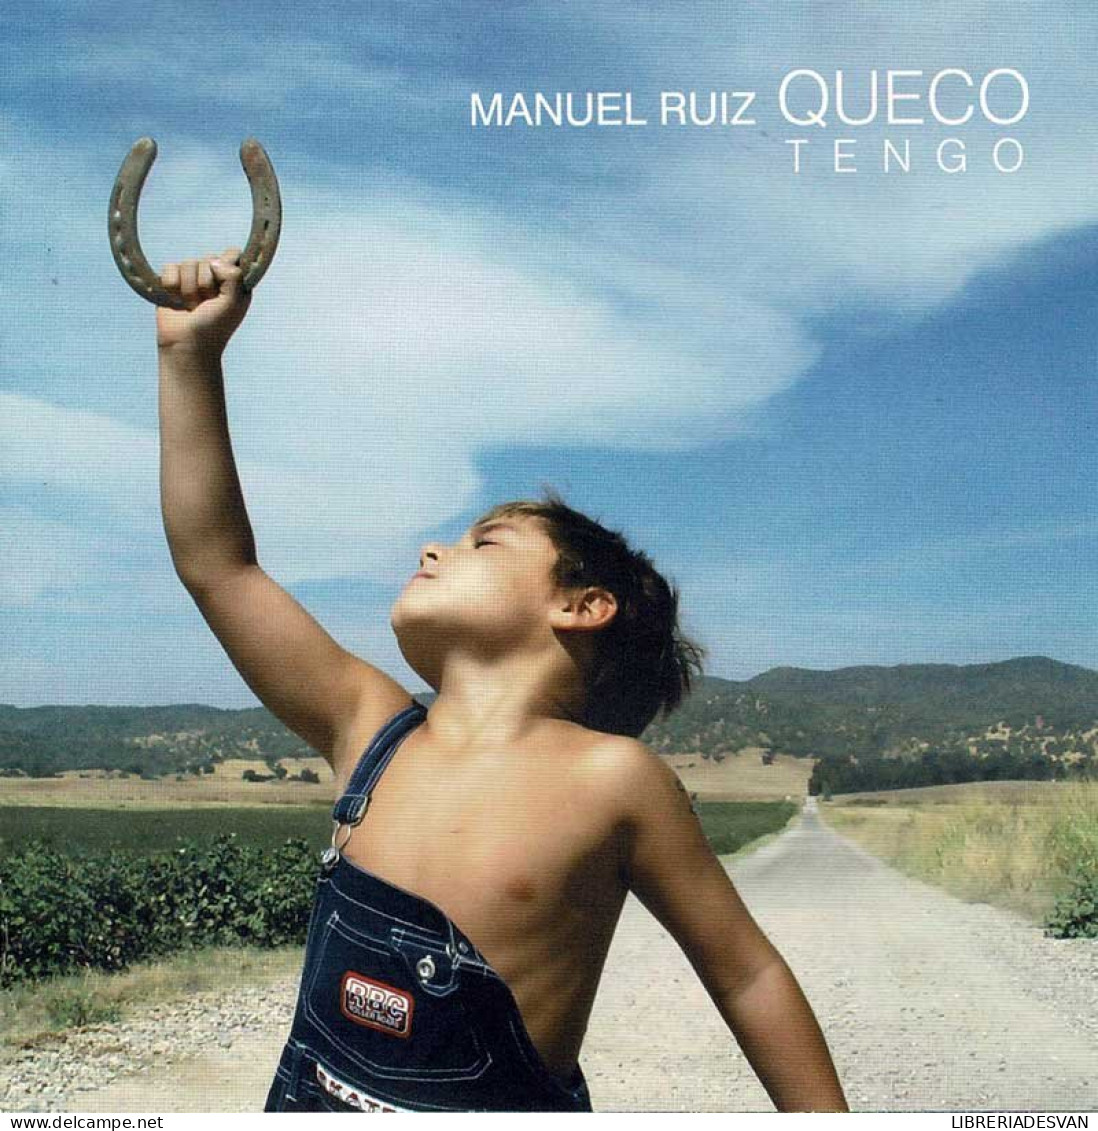 Manuel Ruiz Queco - Tengo. CD - Sonstige - Spanische Musik